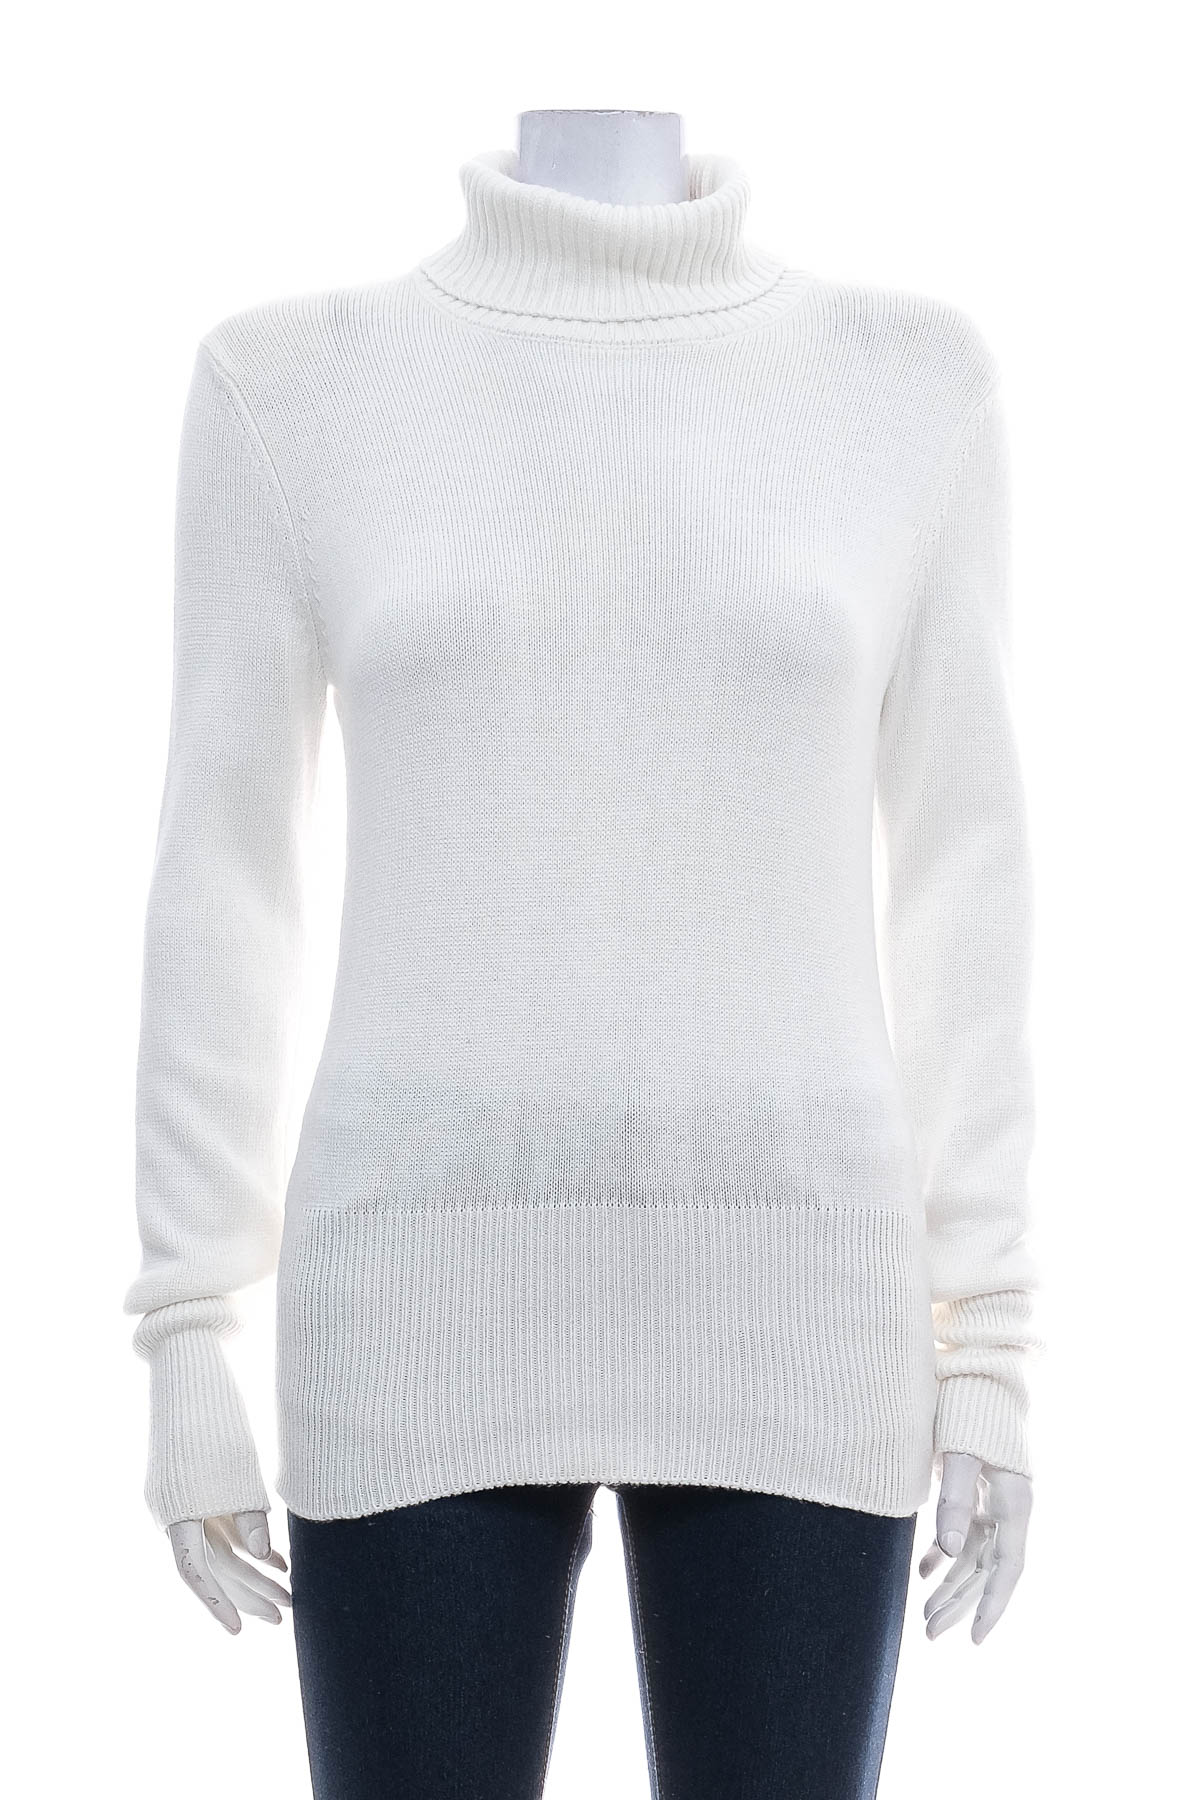 Women's sweater - Ashley Brooke - 0